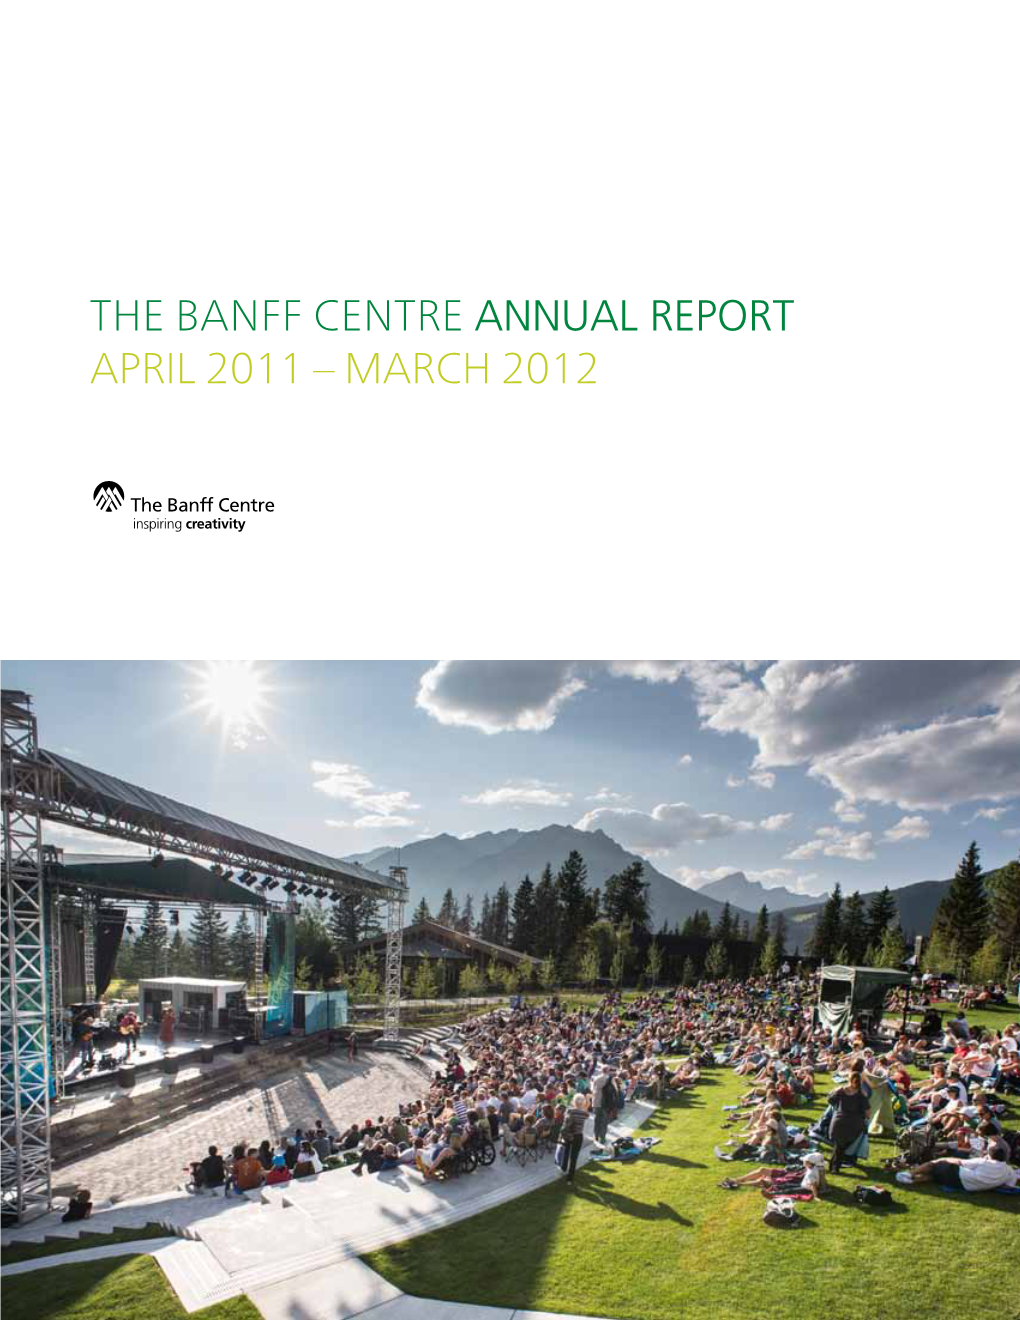 The Banff Centre ANNUAL REPORT April 2011 – March 2012